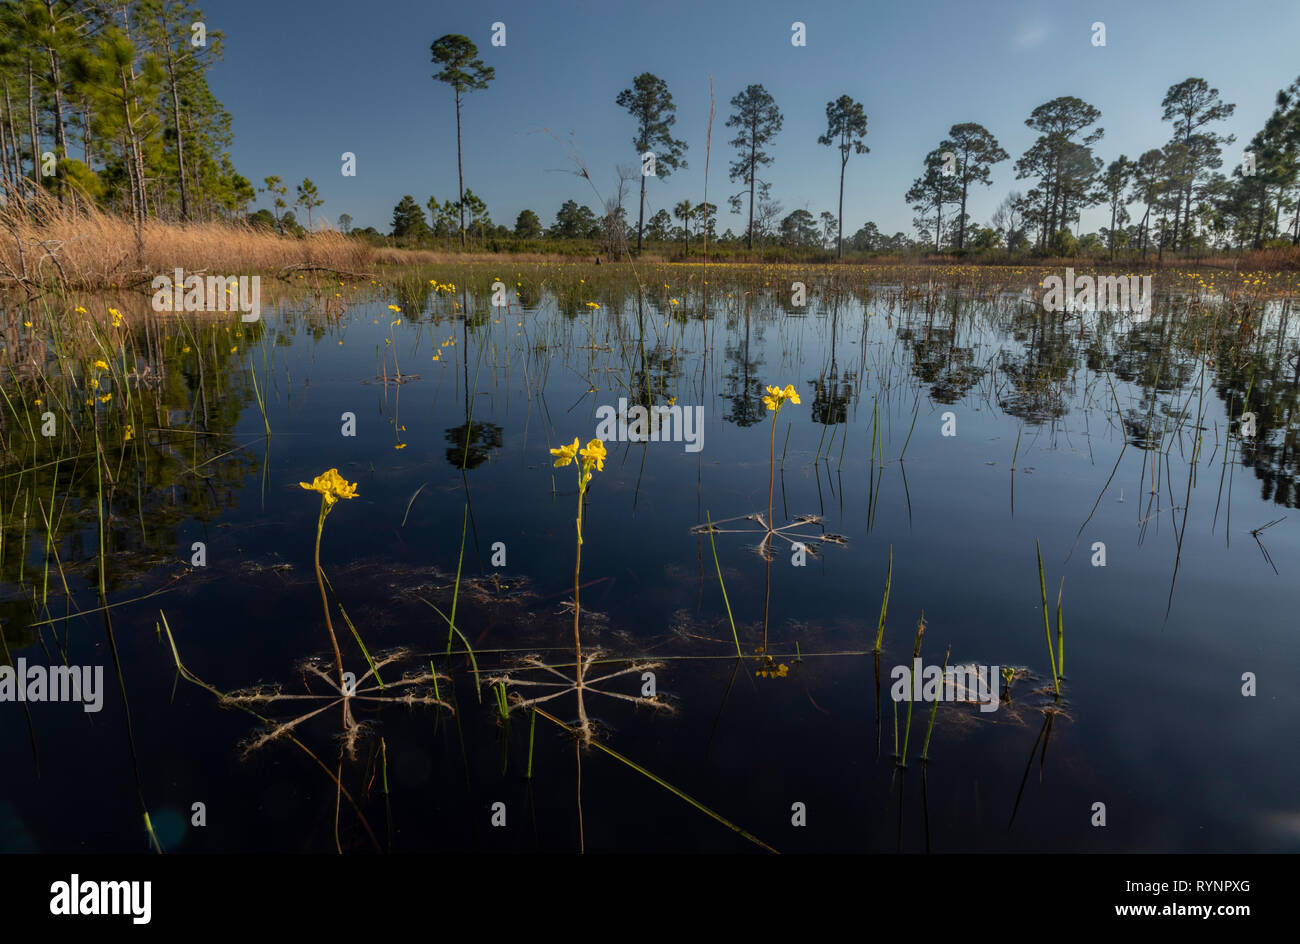 Geschwollene bladderwort, oder große schwimmende bladderwort, Utricularia inflata in einem Wald Teich in Cedar Key Scrub State Reserve, Florida. Stockfoto